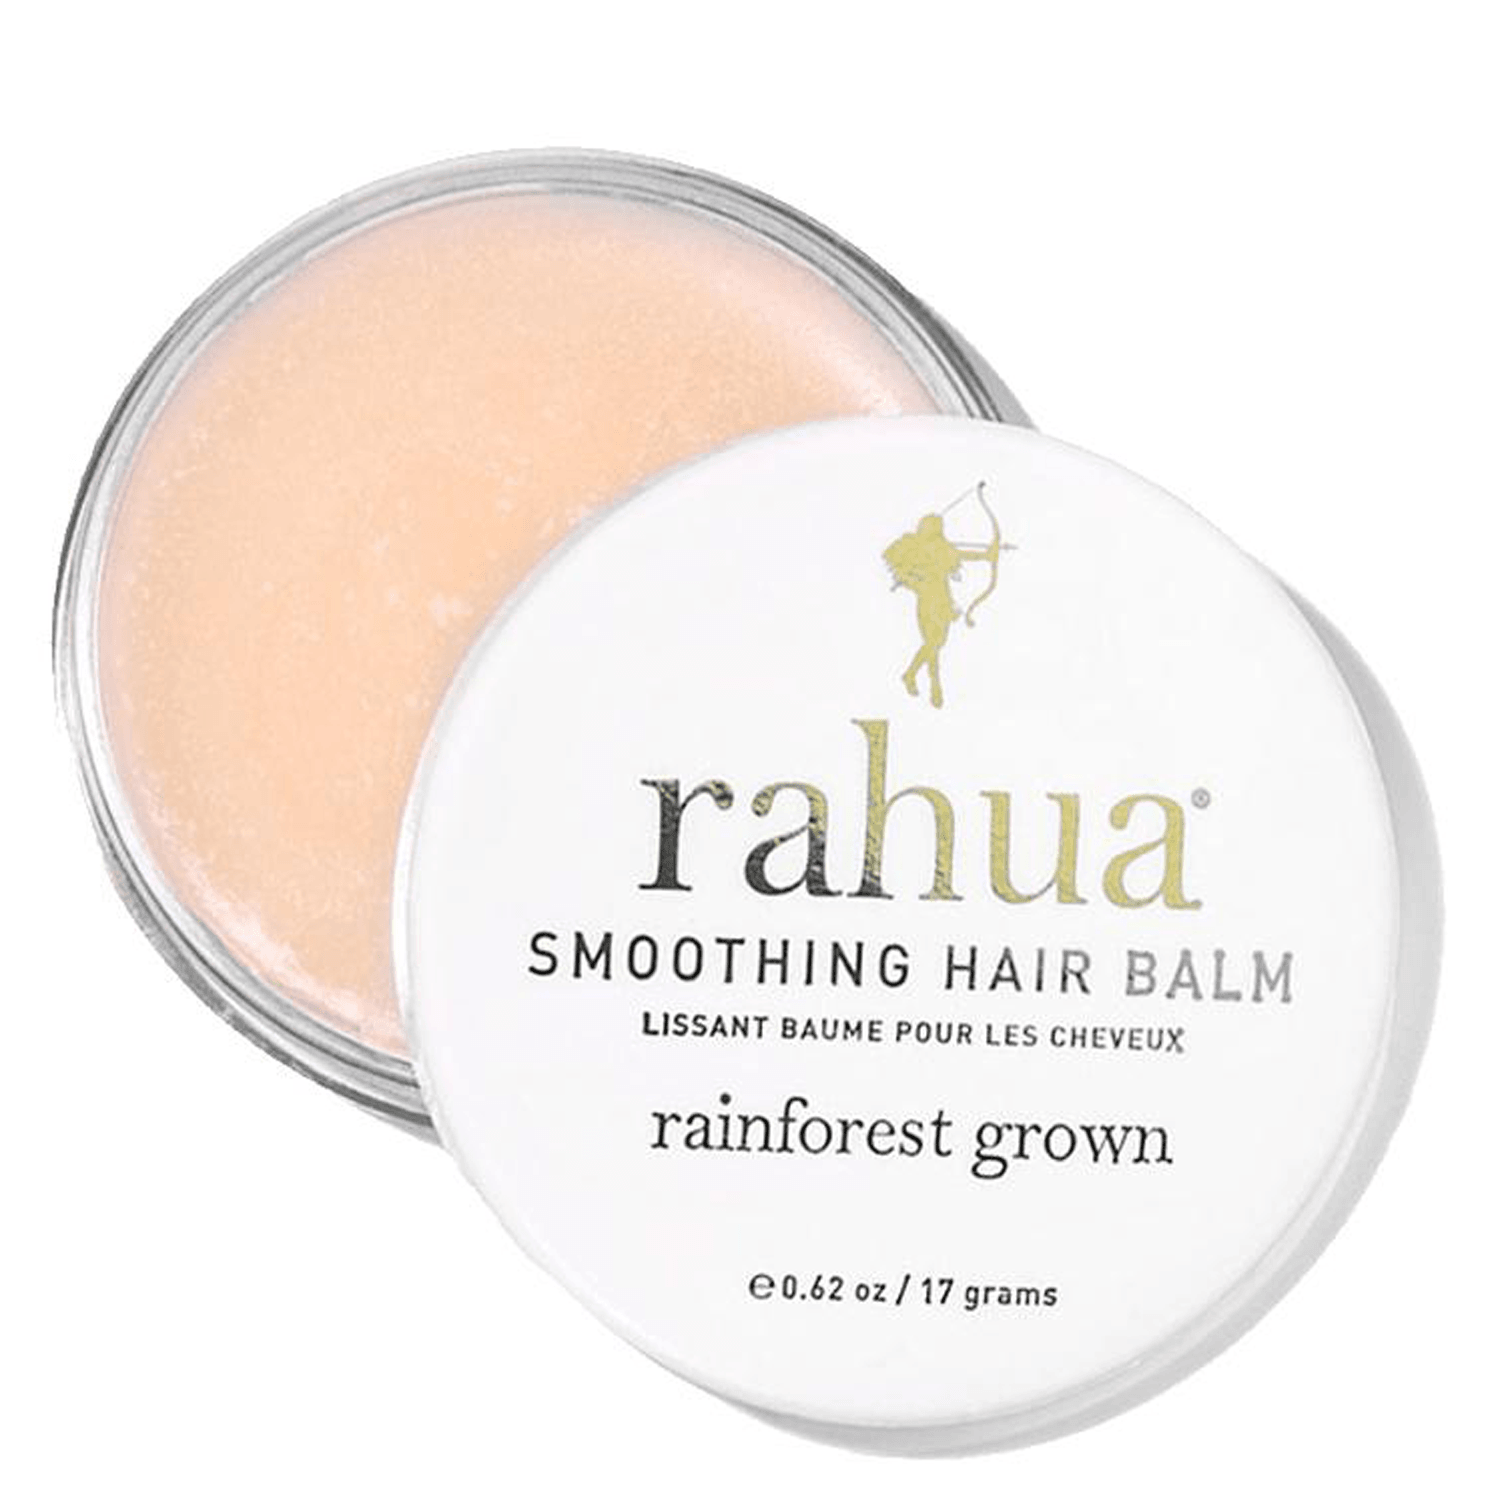 Rahua® Smoothing Hair Balm at Socialite Beauty Canada